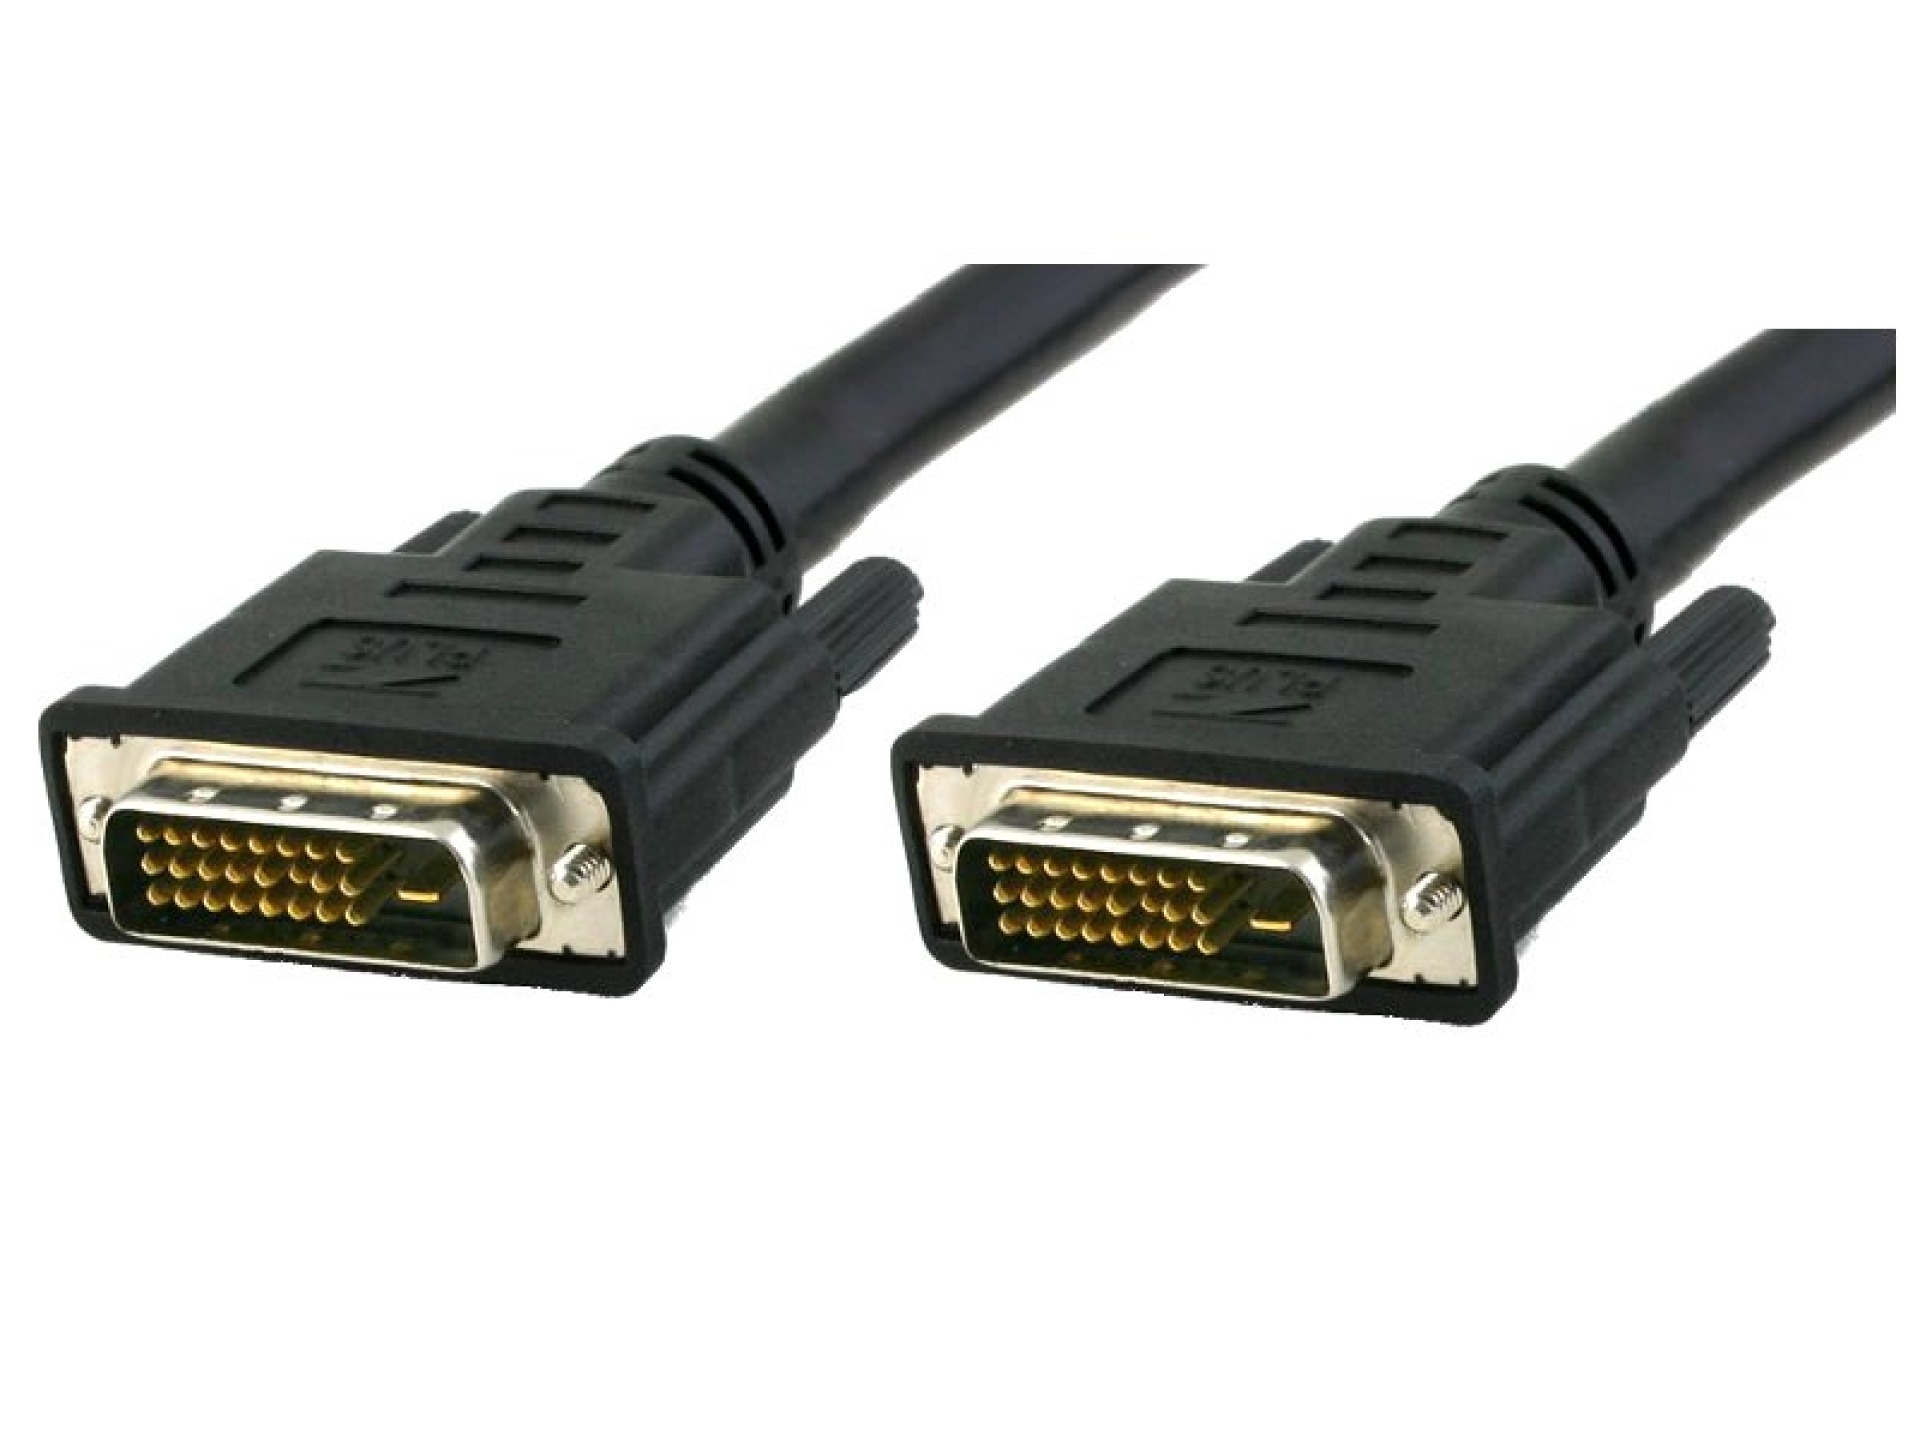 DVI-D Dual-Link Anschlusskabel Stecker/Stecker, schwarz, 3 m